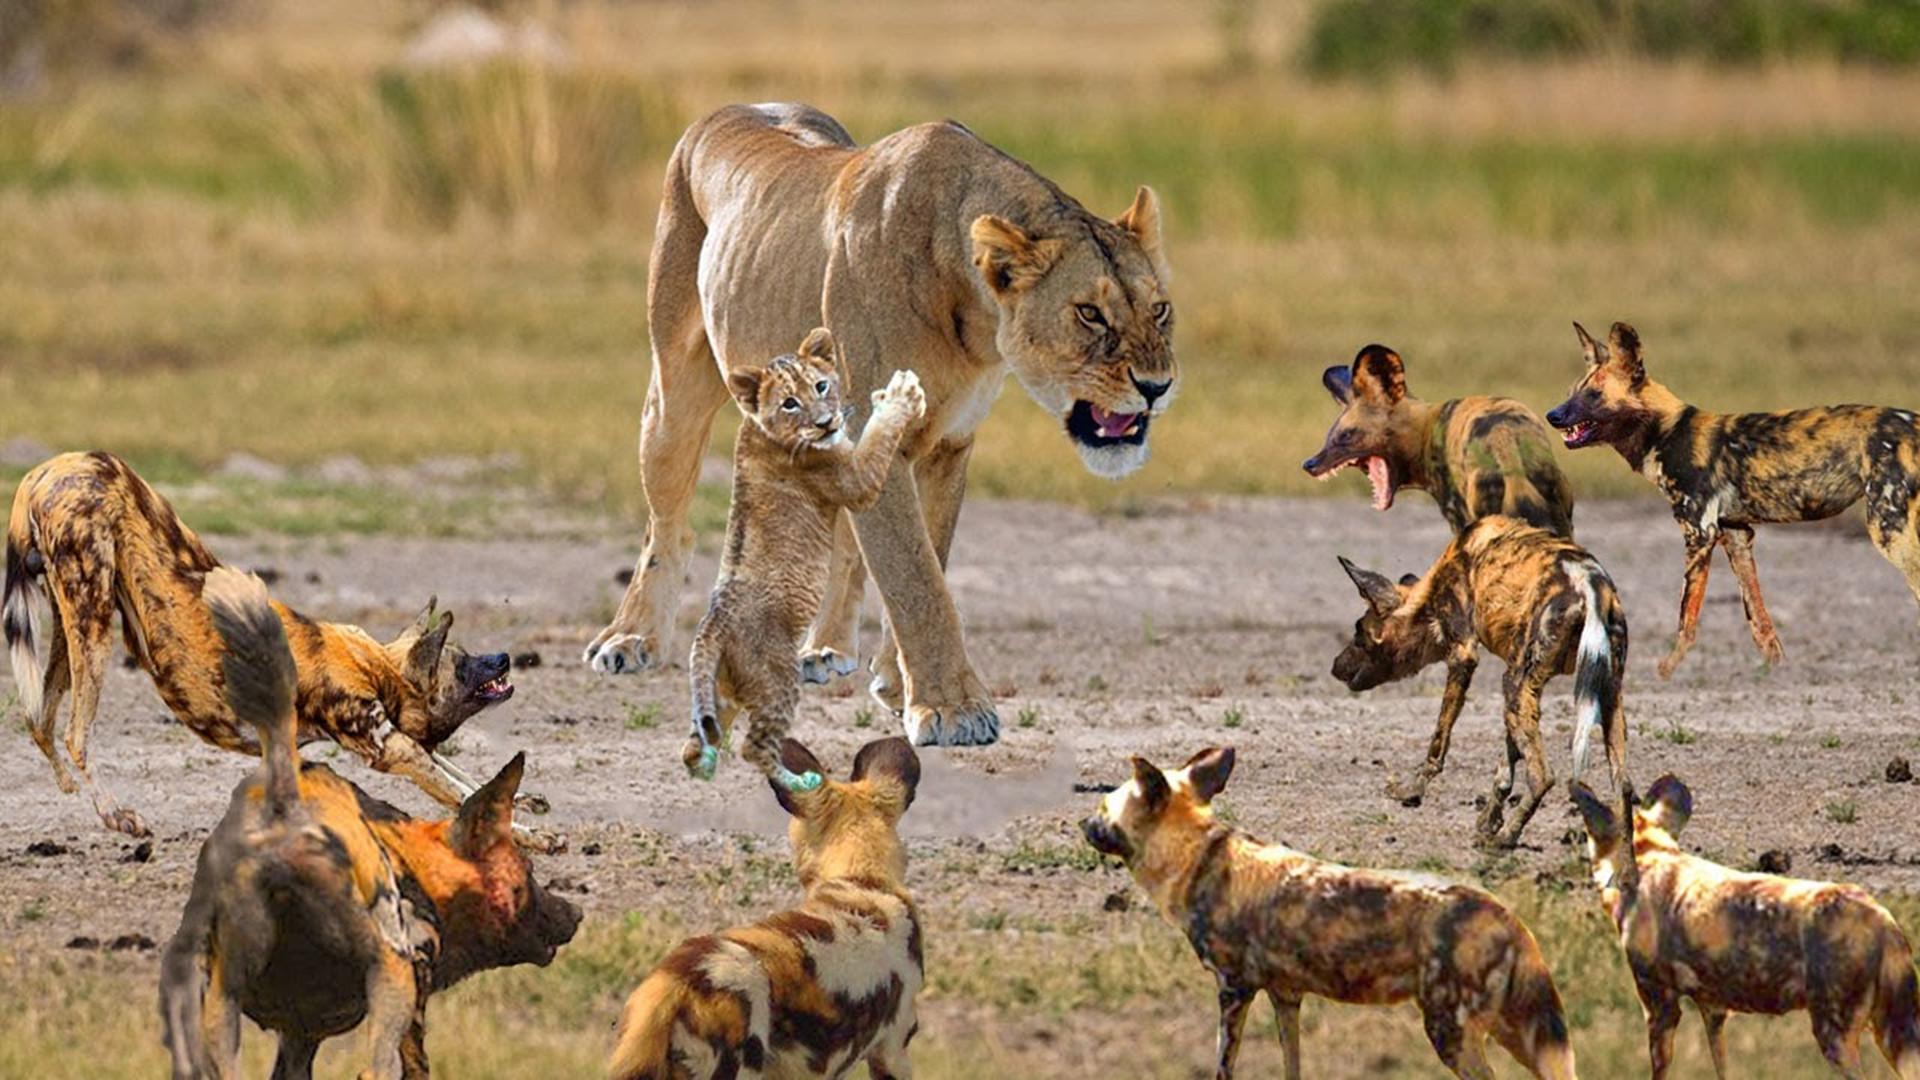 狮狗大战:野狗把狮子妈妈围在中间,狮子临危不惧坐在原地